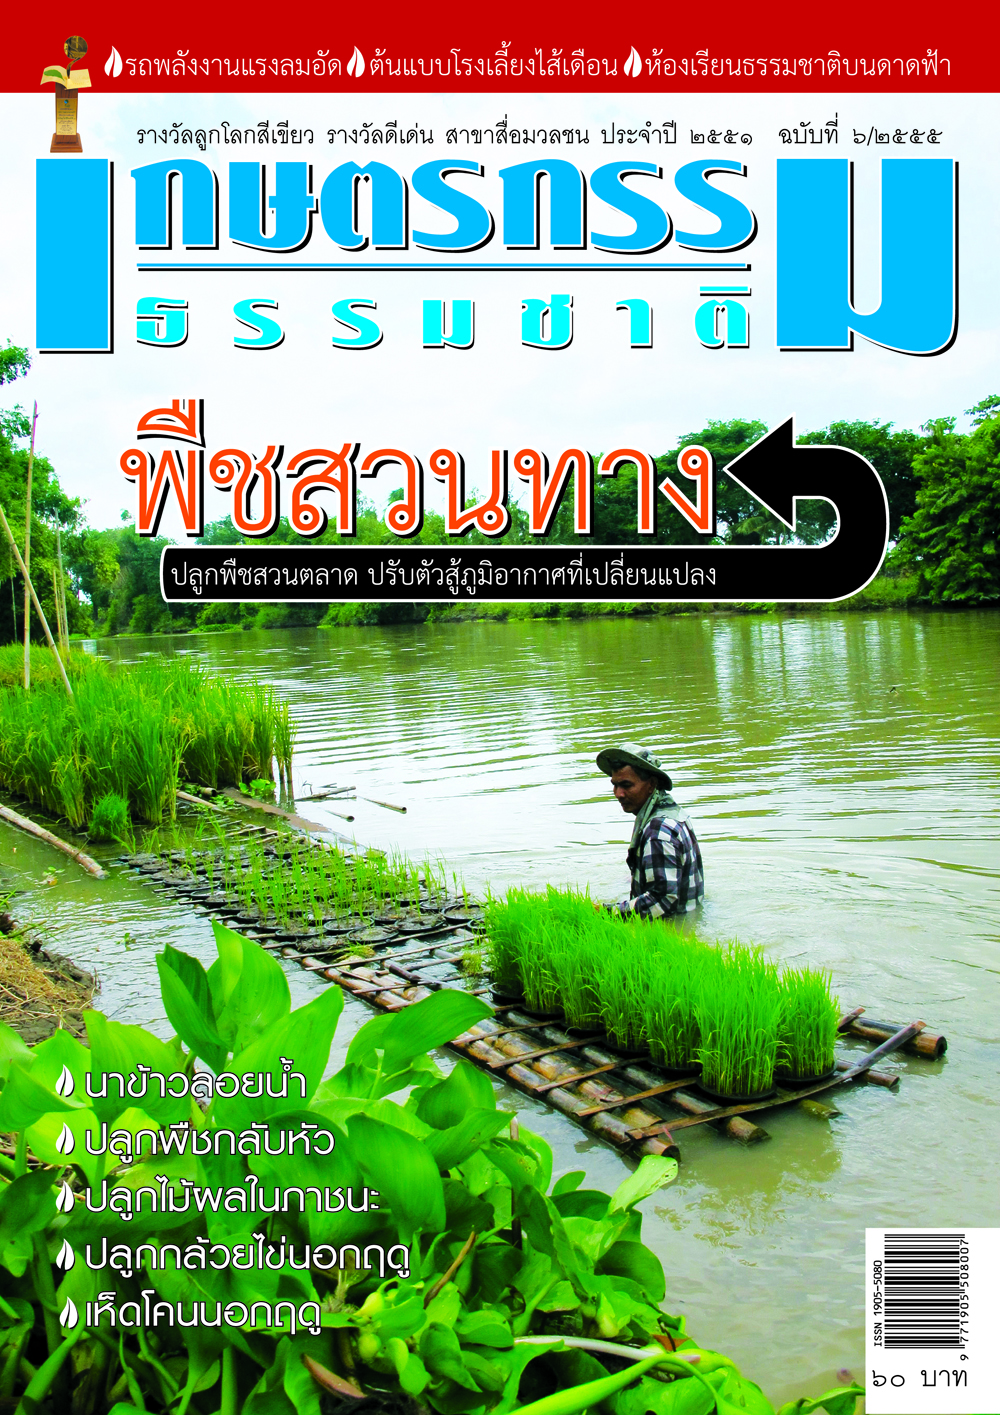 วารสารเกษตรกรรมธรรมชาติ ฉบับที่ 6/2555 พืชสวนทาง ปลูกพืชสวนตลาด ปรับตัวสู้ภูมิอากาศที่เปลี่ยนแปลง